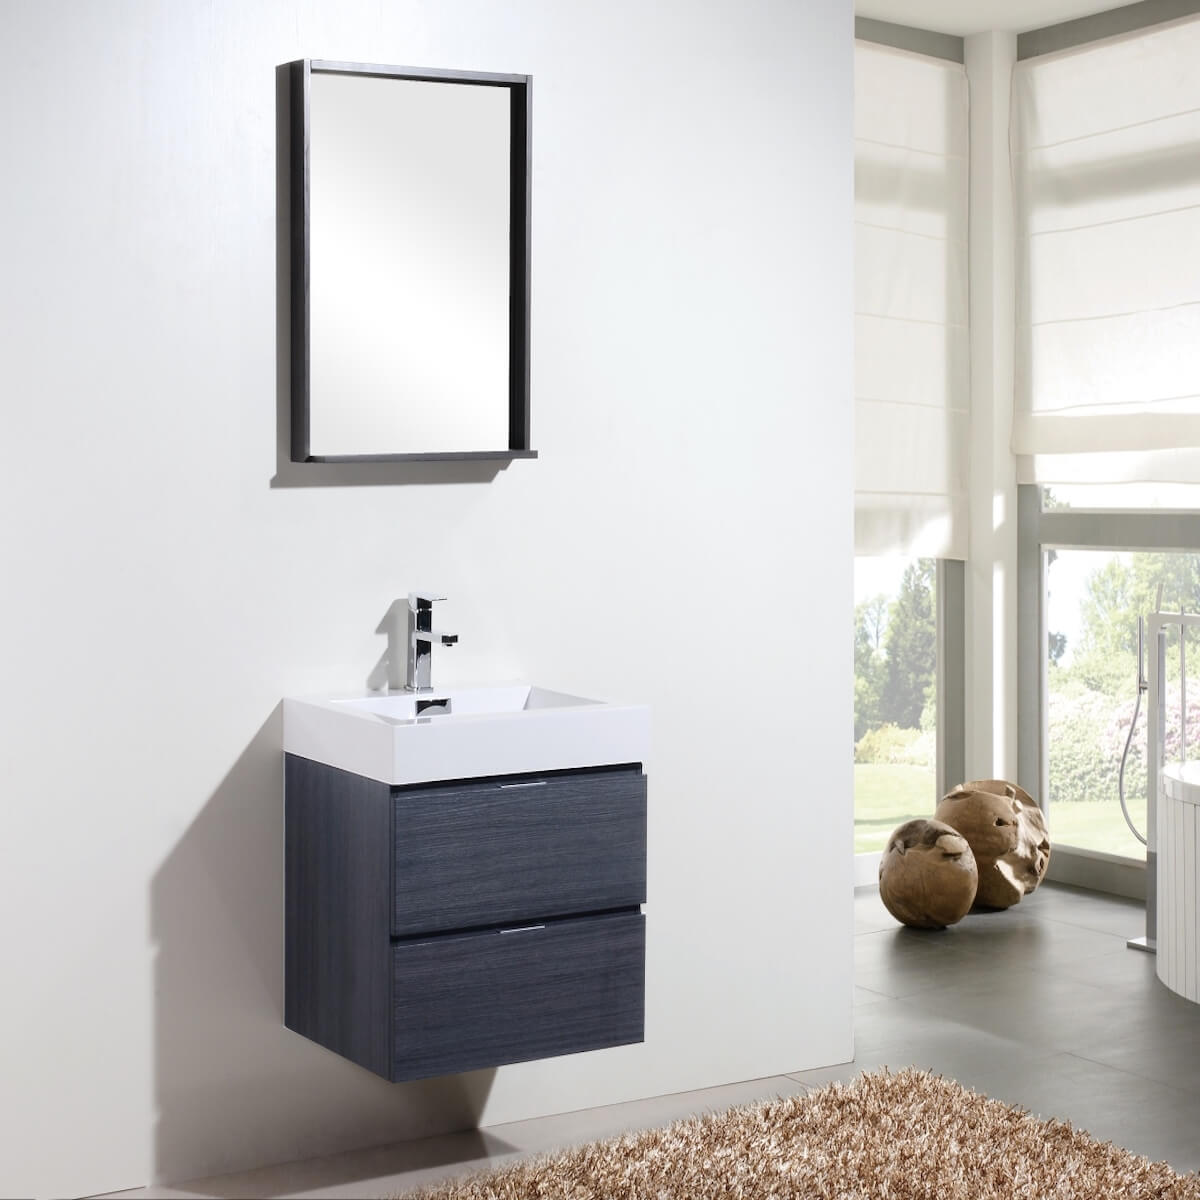 KubeBath Bliss 24" Gray Oak Wall Mount Single Vanity BSL24-GO in Bathroom #finish_gray oak